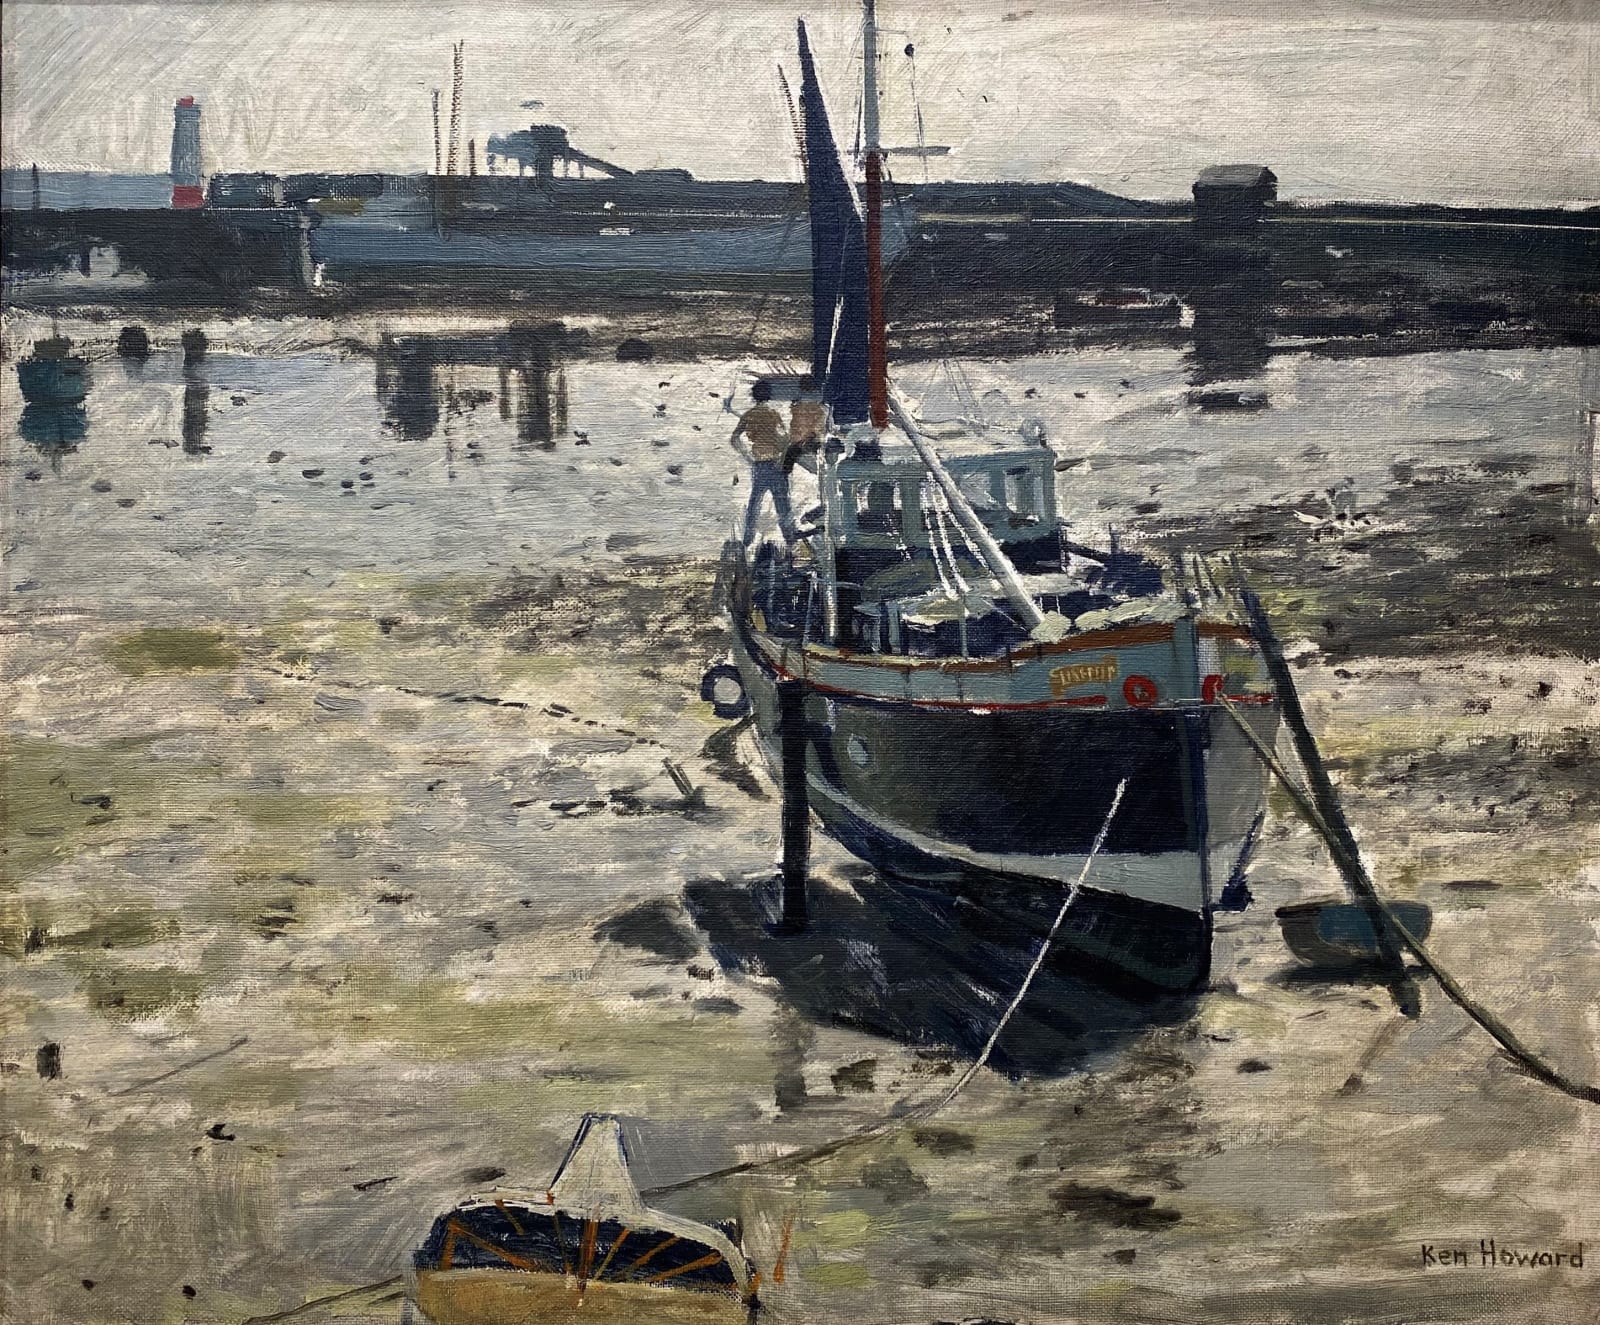 Ken Howard, Looe Harbour, c.1980